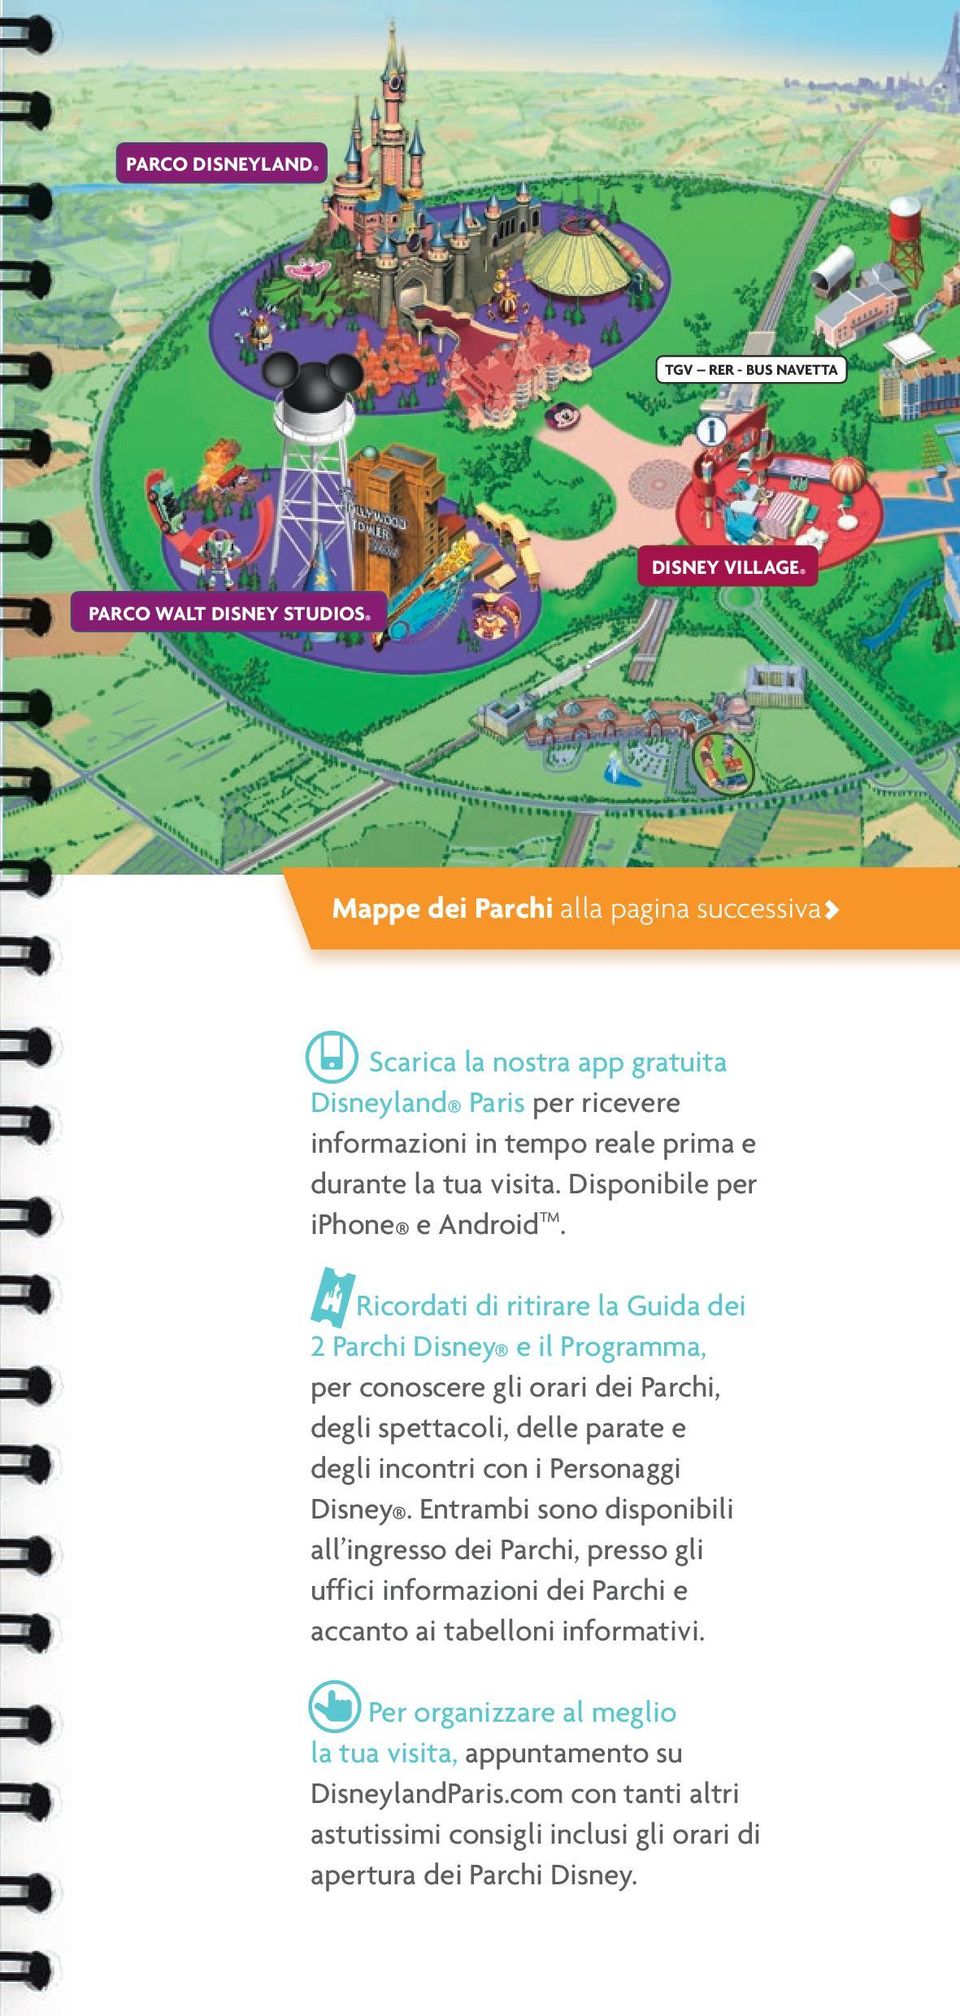 Ricordati di ritirare la Guida dei 2 Parchi Disney e il Programma, per conoscere gli orari dei Parchi, degli spettacoli, delle parate e degli incontri con i Personaggi Disney.